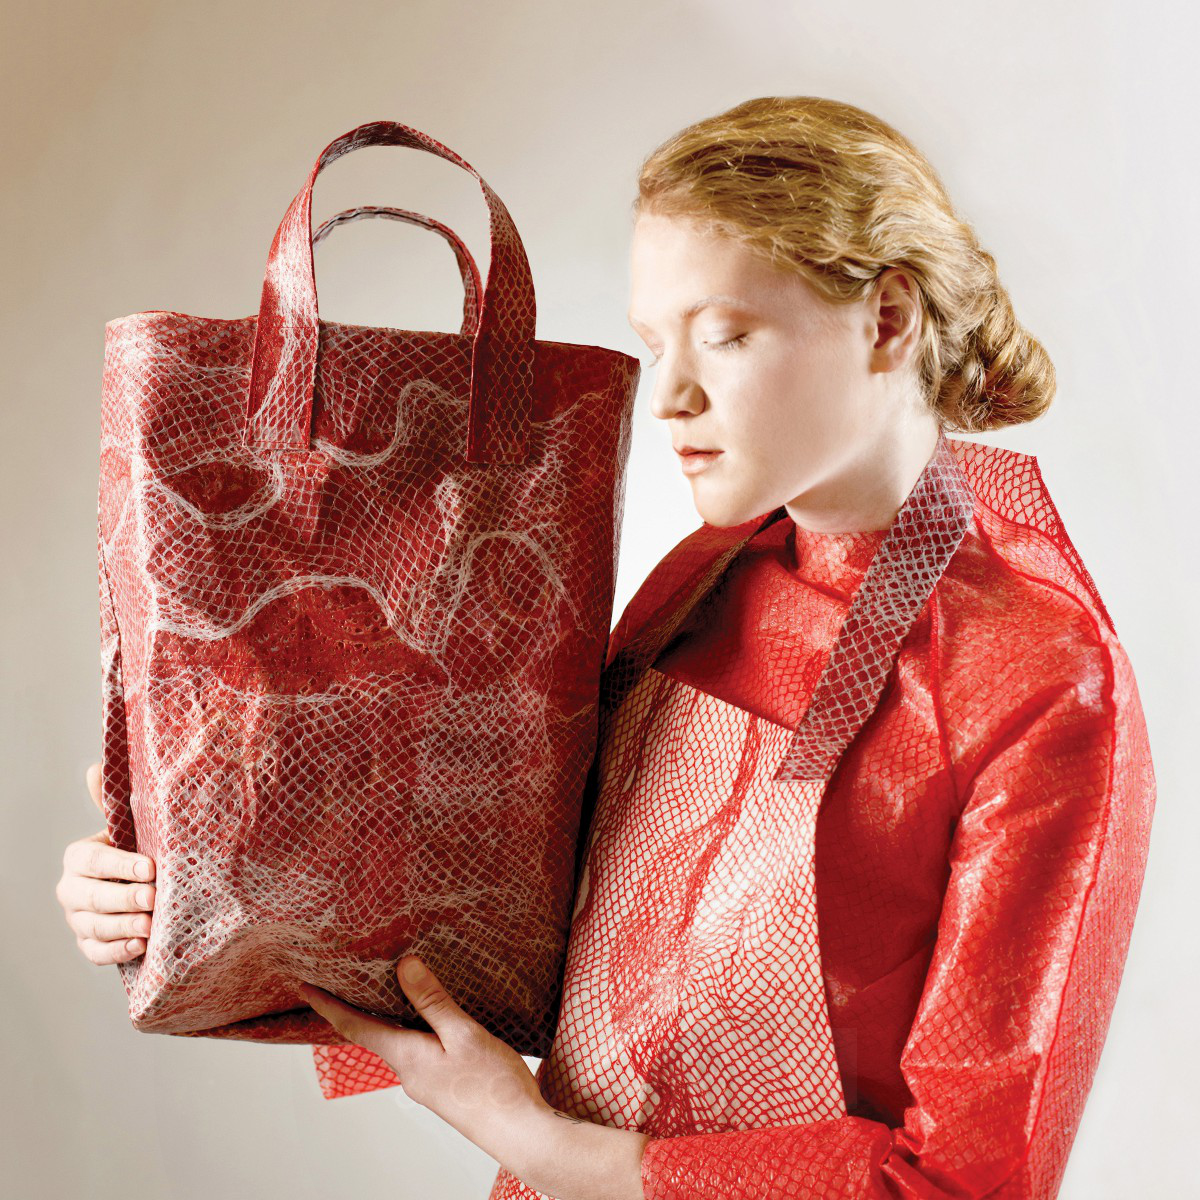 Lamella Textile by Elzbieta Cios